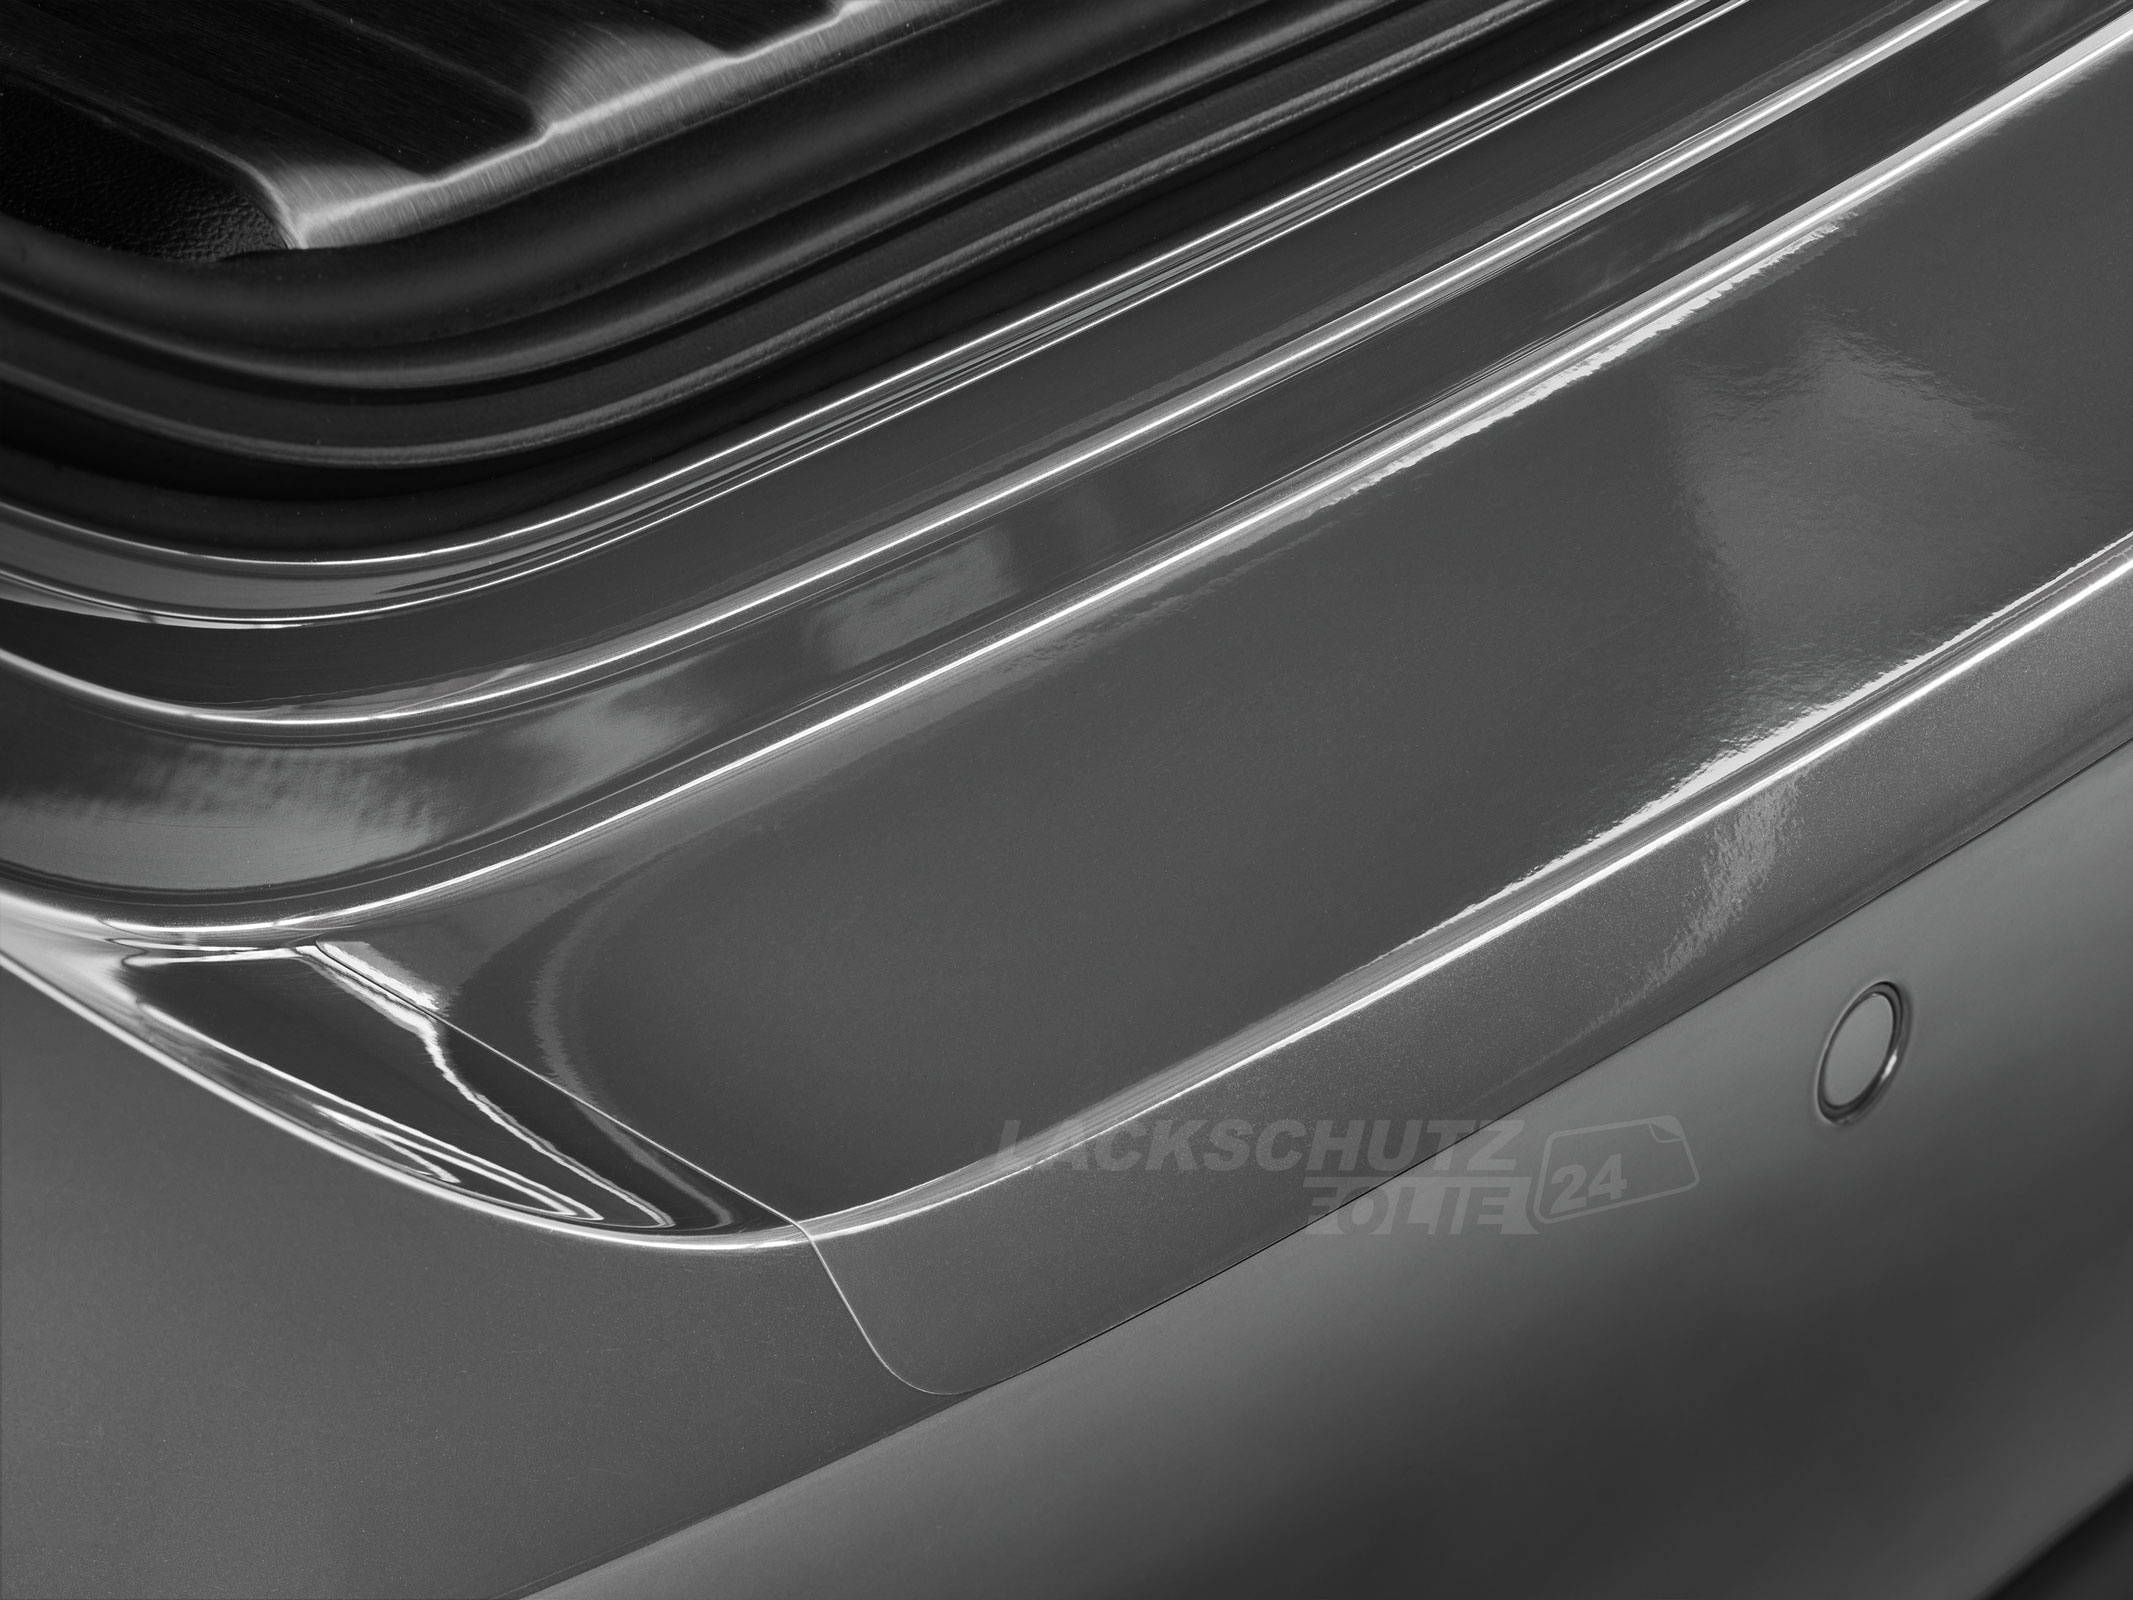 Ladekantenschutzfolie - Transparent Glatt Hochglänzend 150 µm stark für BMW 1er  Typ F20 / F21, Facelift, BJ 02/2015-08/2019